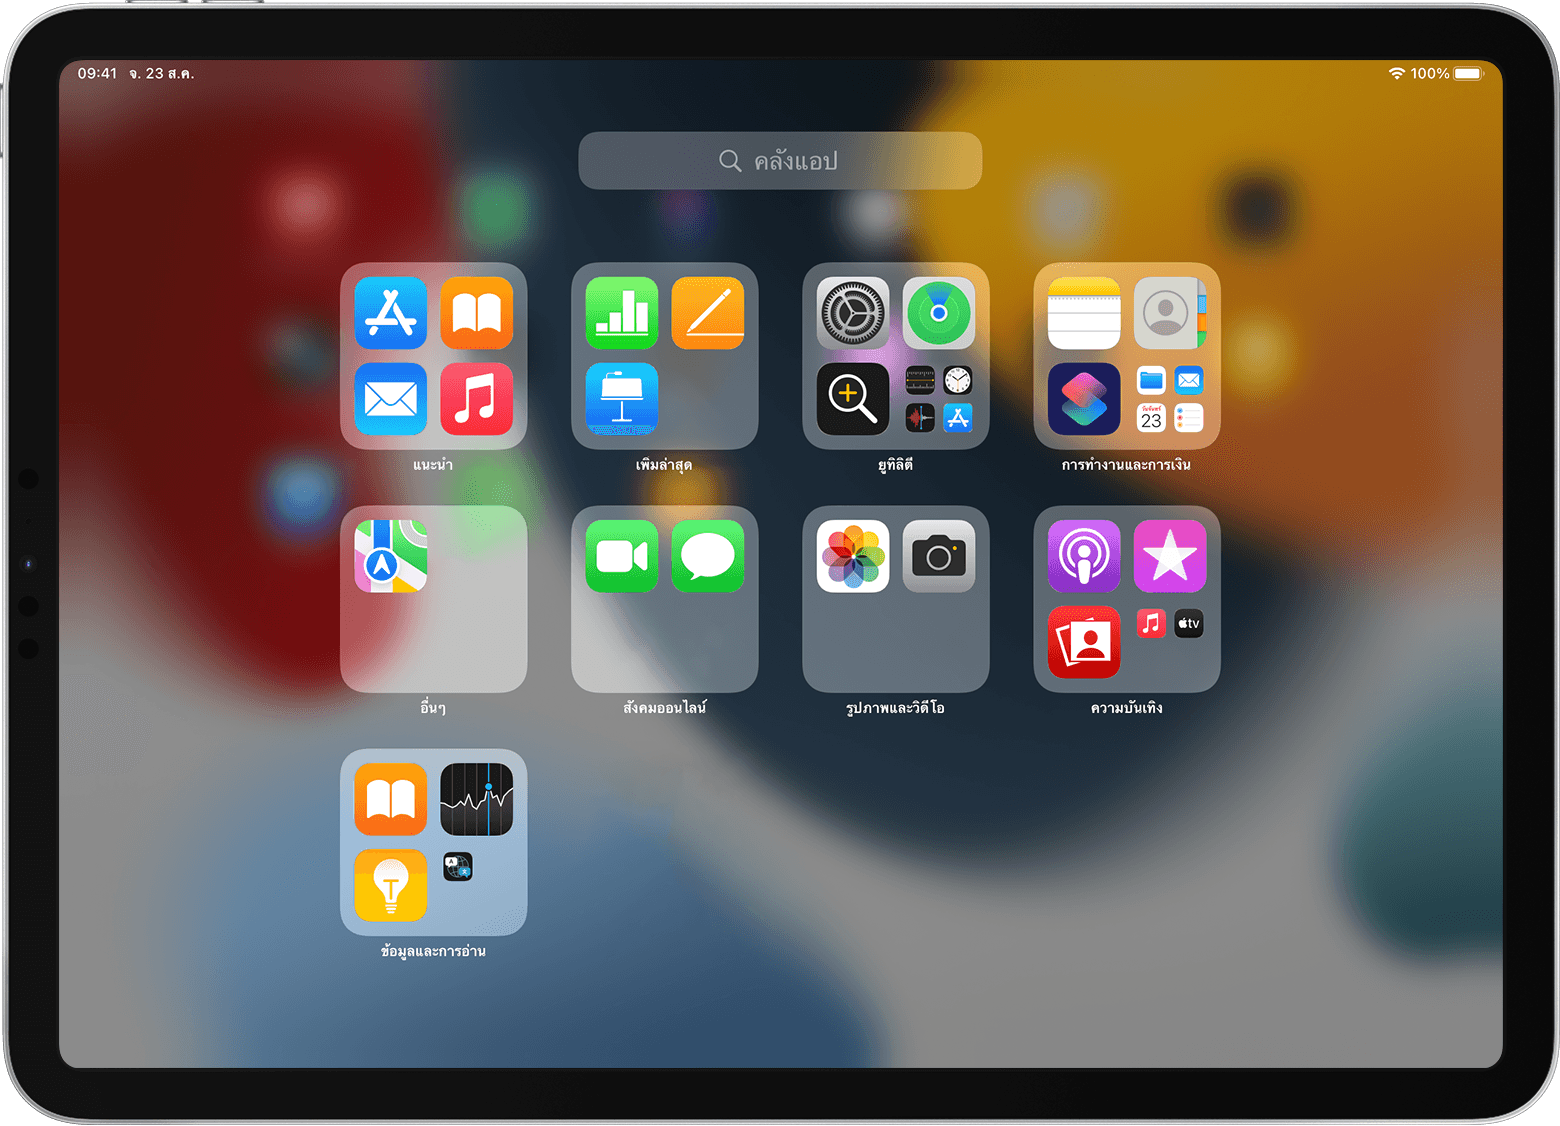 ใช้คลังแอปและหน้าจอโฮมเพื่อจัดระเบียบแอป Ipad ของคุณ - Apple การสนับสนุน  (Th)